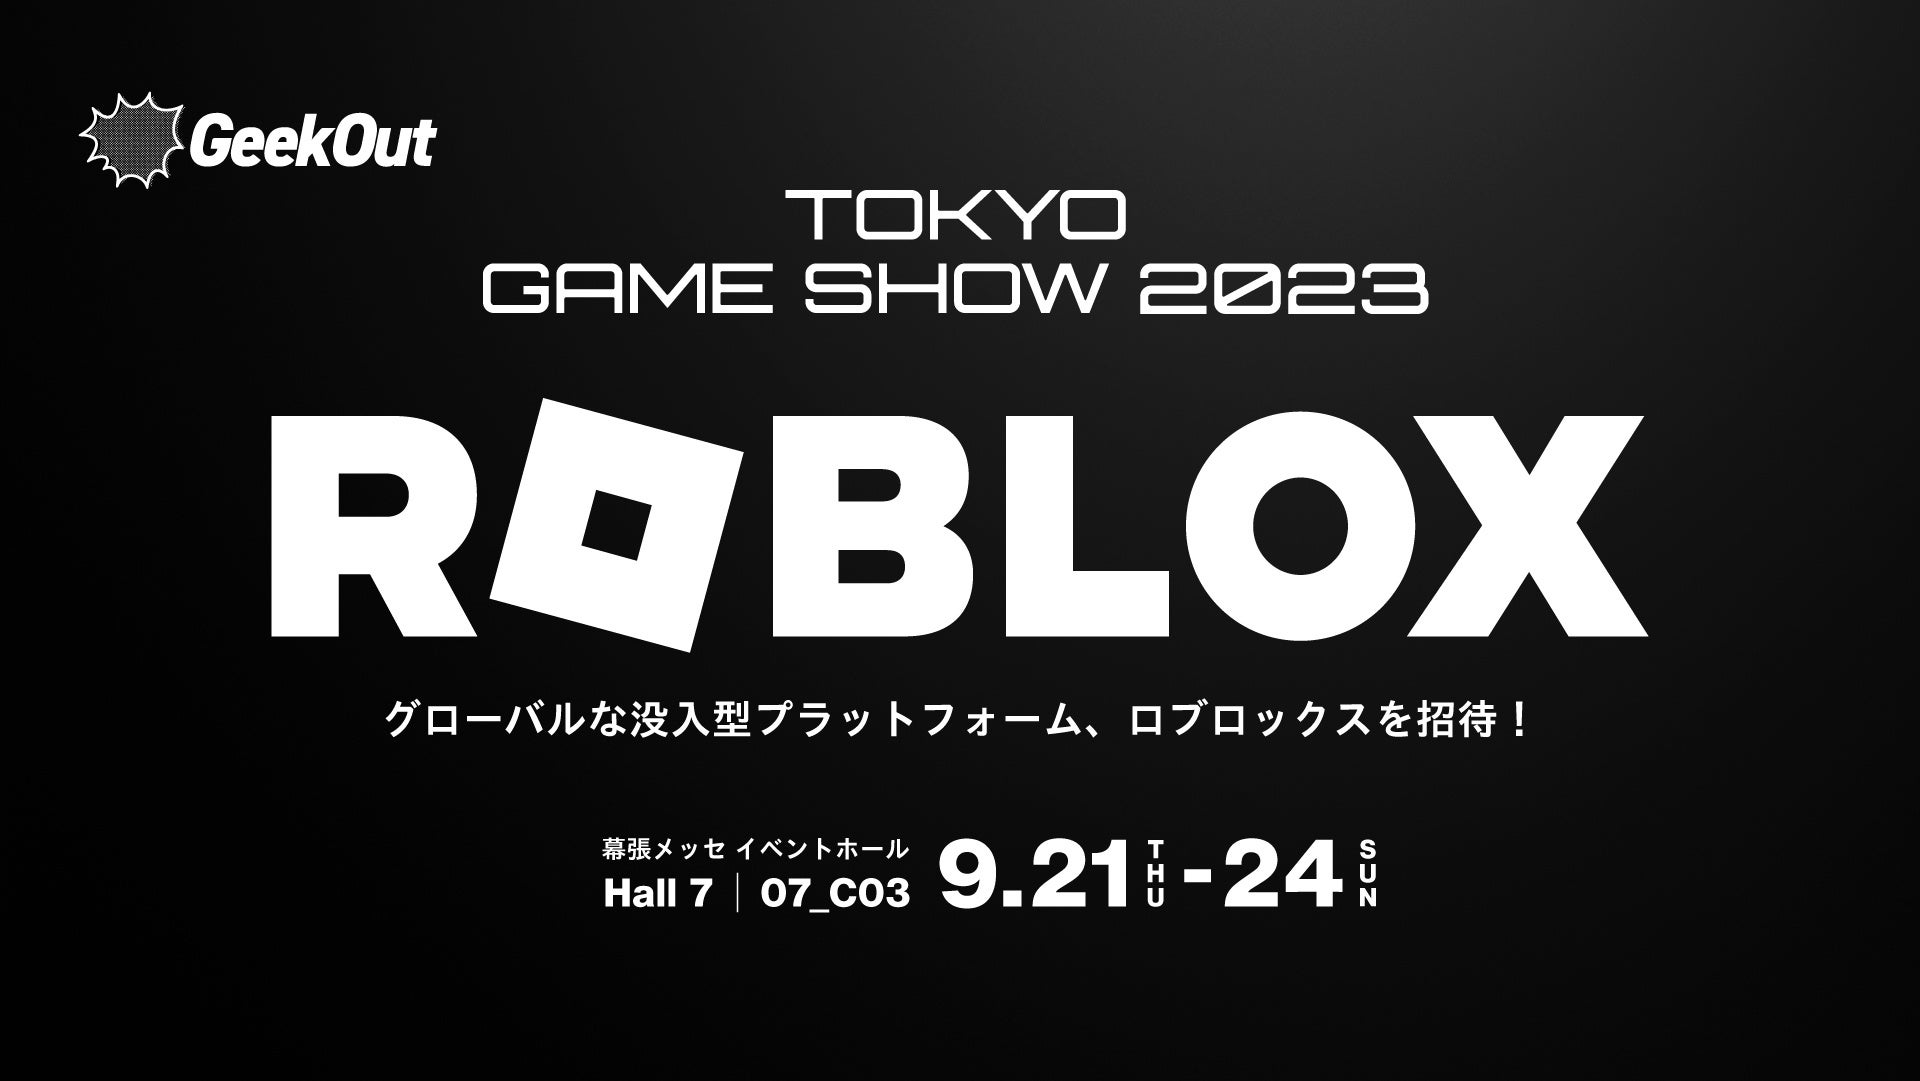 大人気オンラインゲームFortnite（フォートナイト）に本日9月1日より東京ドームをモデルにしたオリジナルゲームマップが登場！細部まで再現された東京ドームでバトルロイヤルを楽しめる！